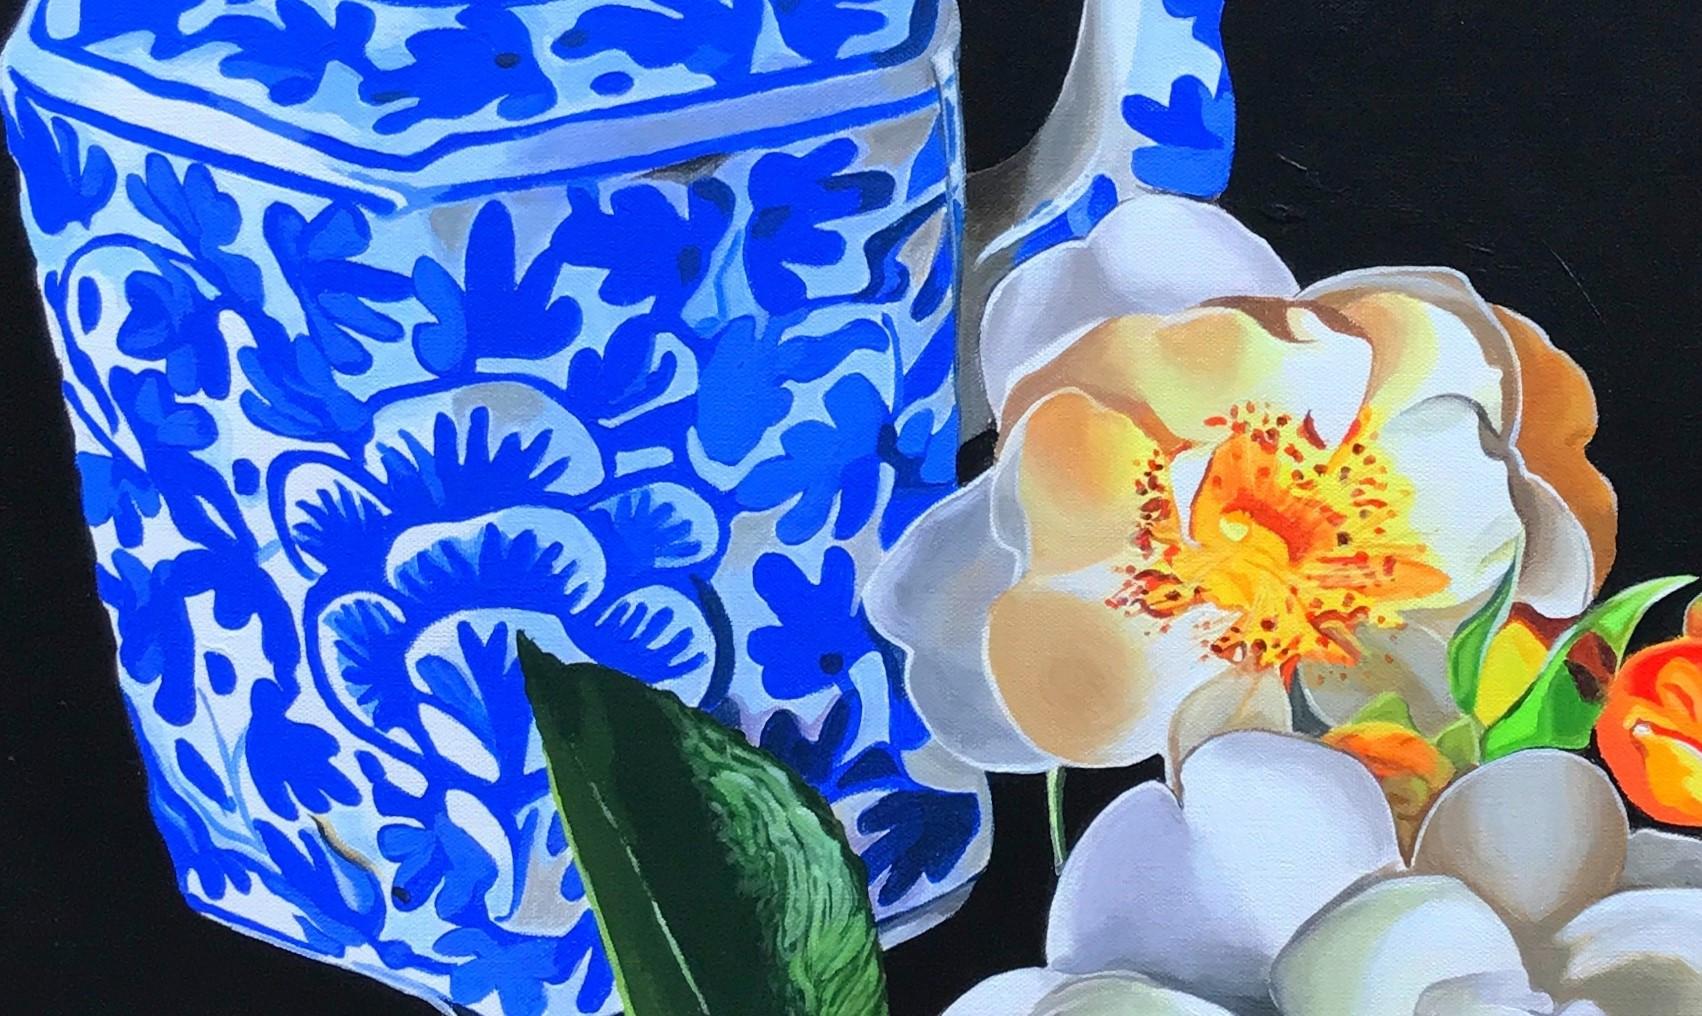 <p>Kommentare des Künstlers<br>Der Künstler John Jaster malt ein realistisches Stillleben mit einer Teekanne und Blumen. Weiße Rosen blühen, einige mit geöffneten Blütenblättern und andere noch in ihren bunten Knospen. Das verschnörkelte blau-weiße